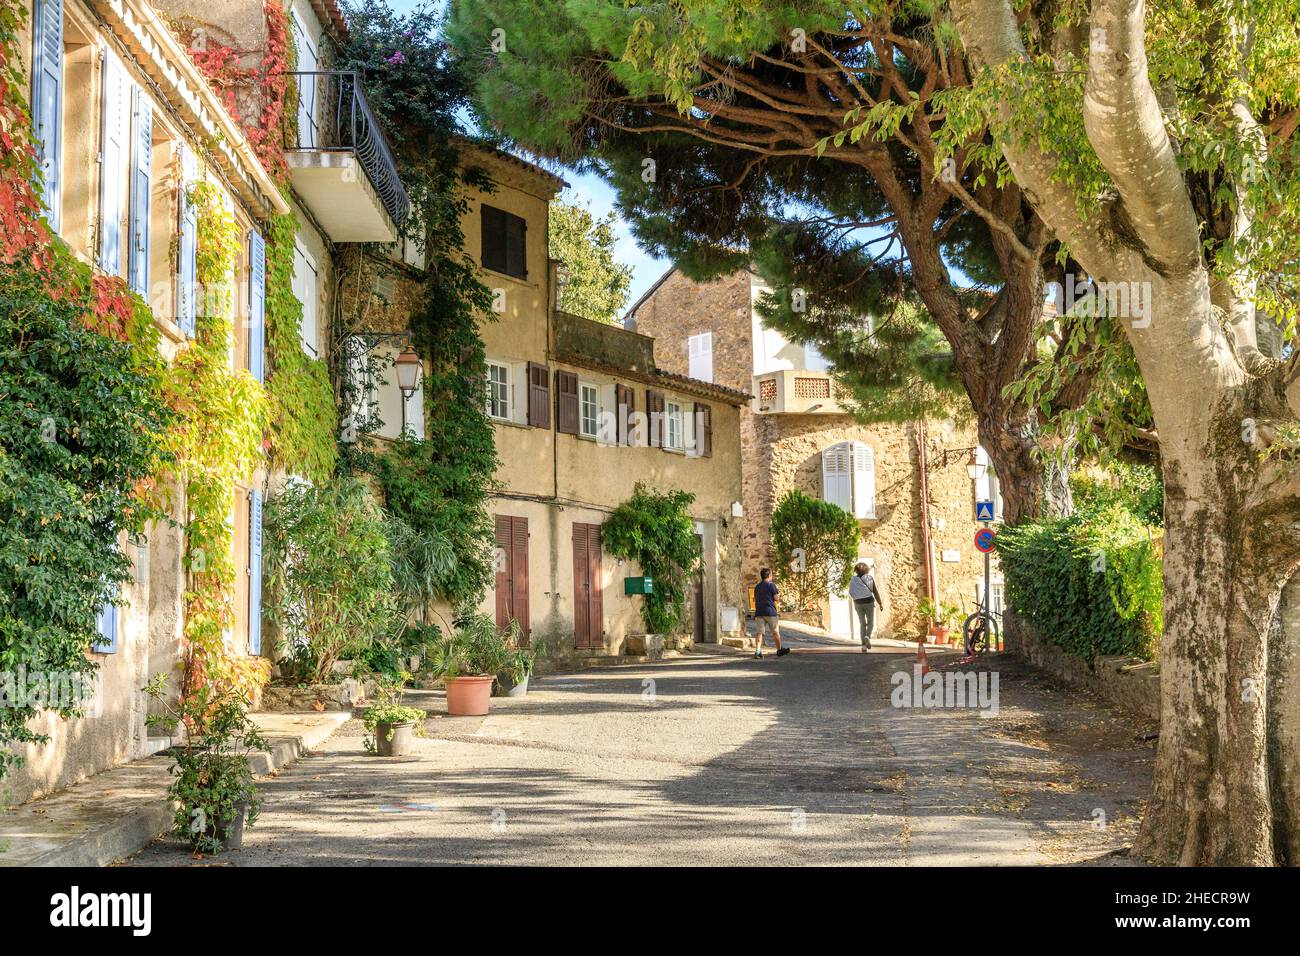 France, Var, Gulf of Saint Tropez, Gassin, labelled Les Plus Beaux Villages de France (The Most Beautiful Villages of France), street in the village, Stock Photo